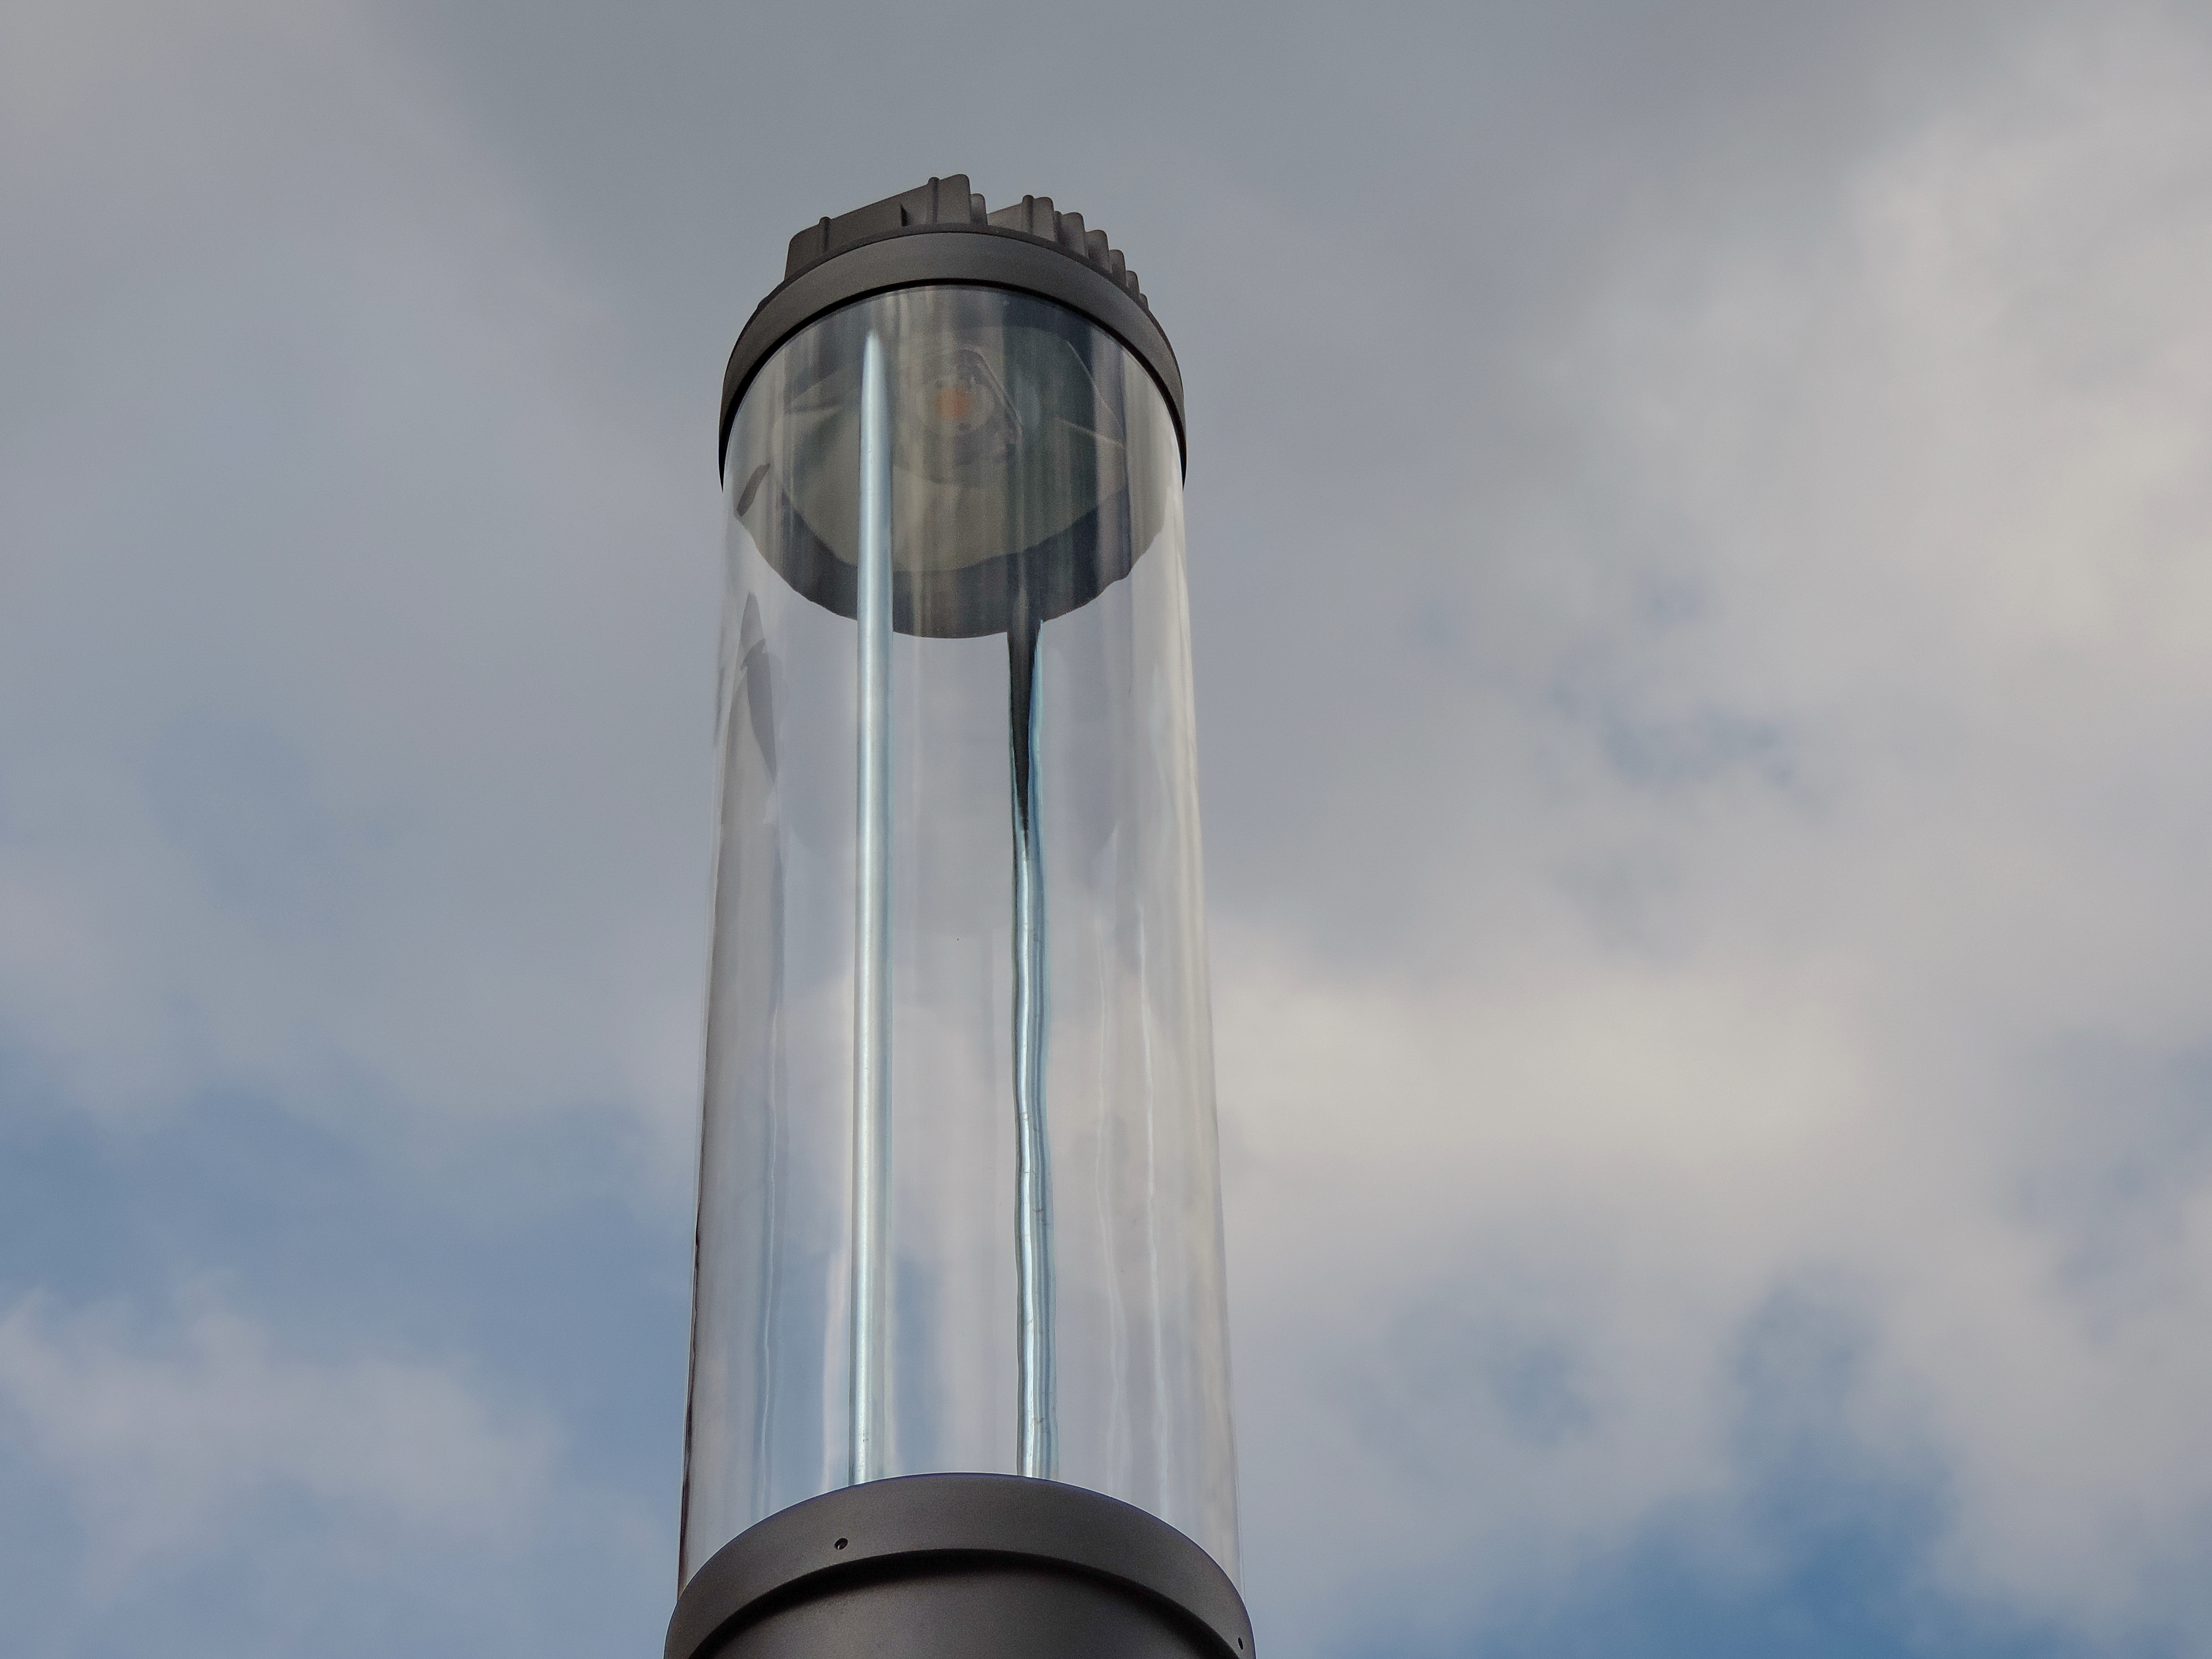 Воздушный стеклянный колокол. Фильтр воздушный стеклянный. Фонарь верхнего света в архитектуре виды. N воздуха и стекла